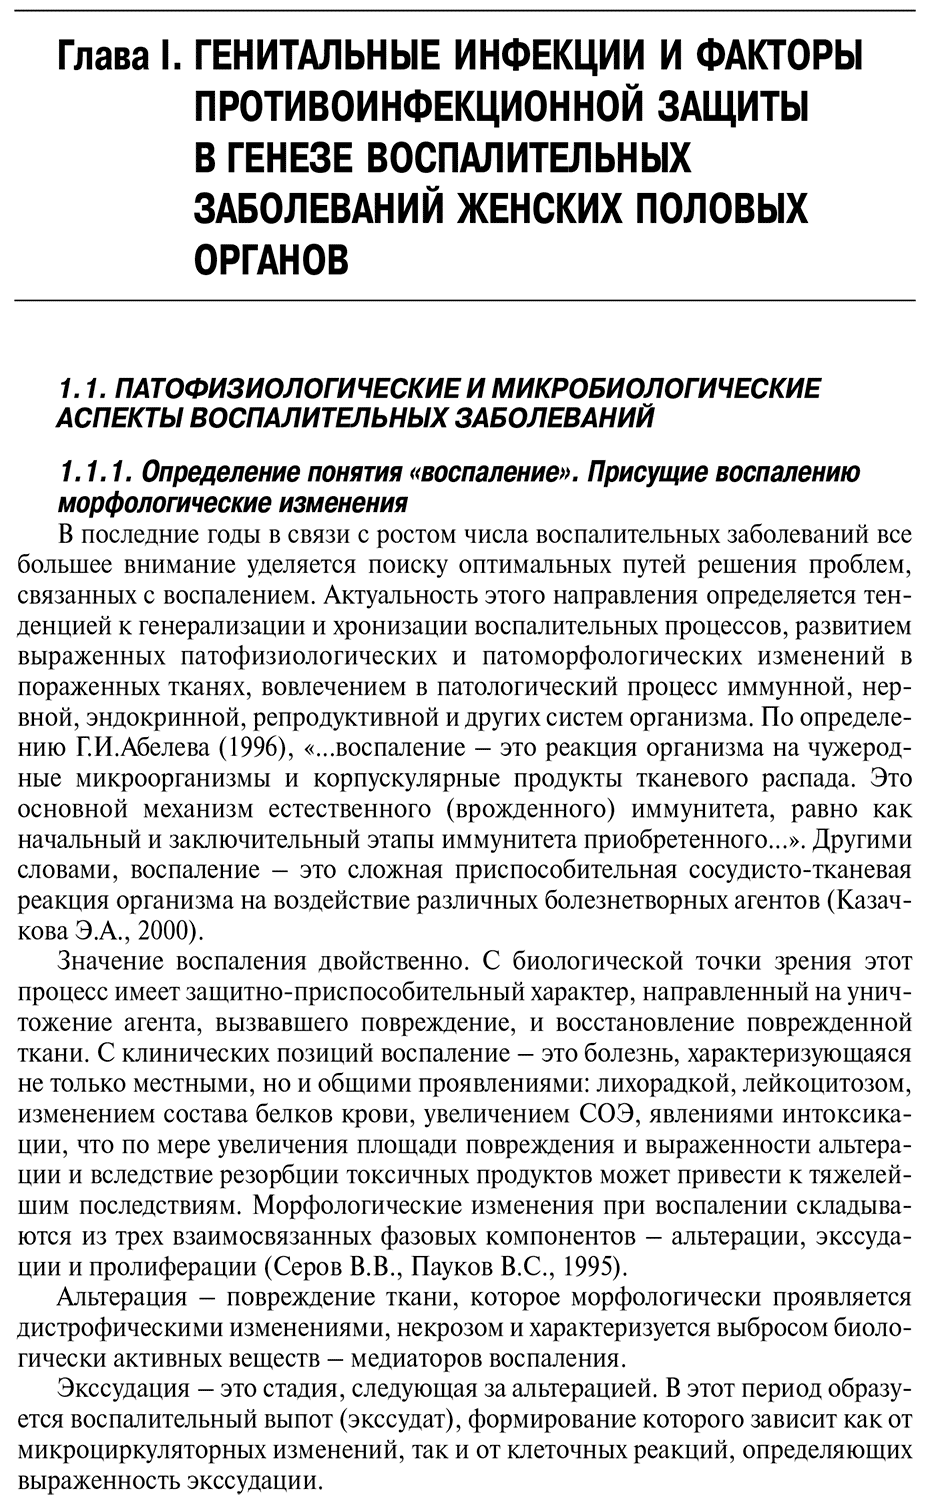 Пример страницы из книги "Инфекции в акушерстве и гинекологии" - Макаров О. В.